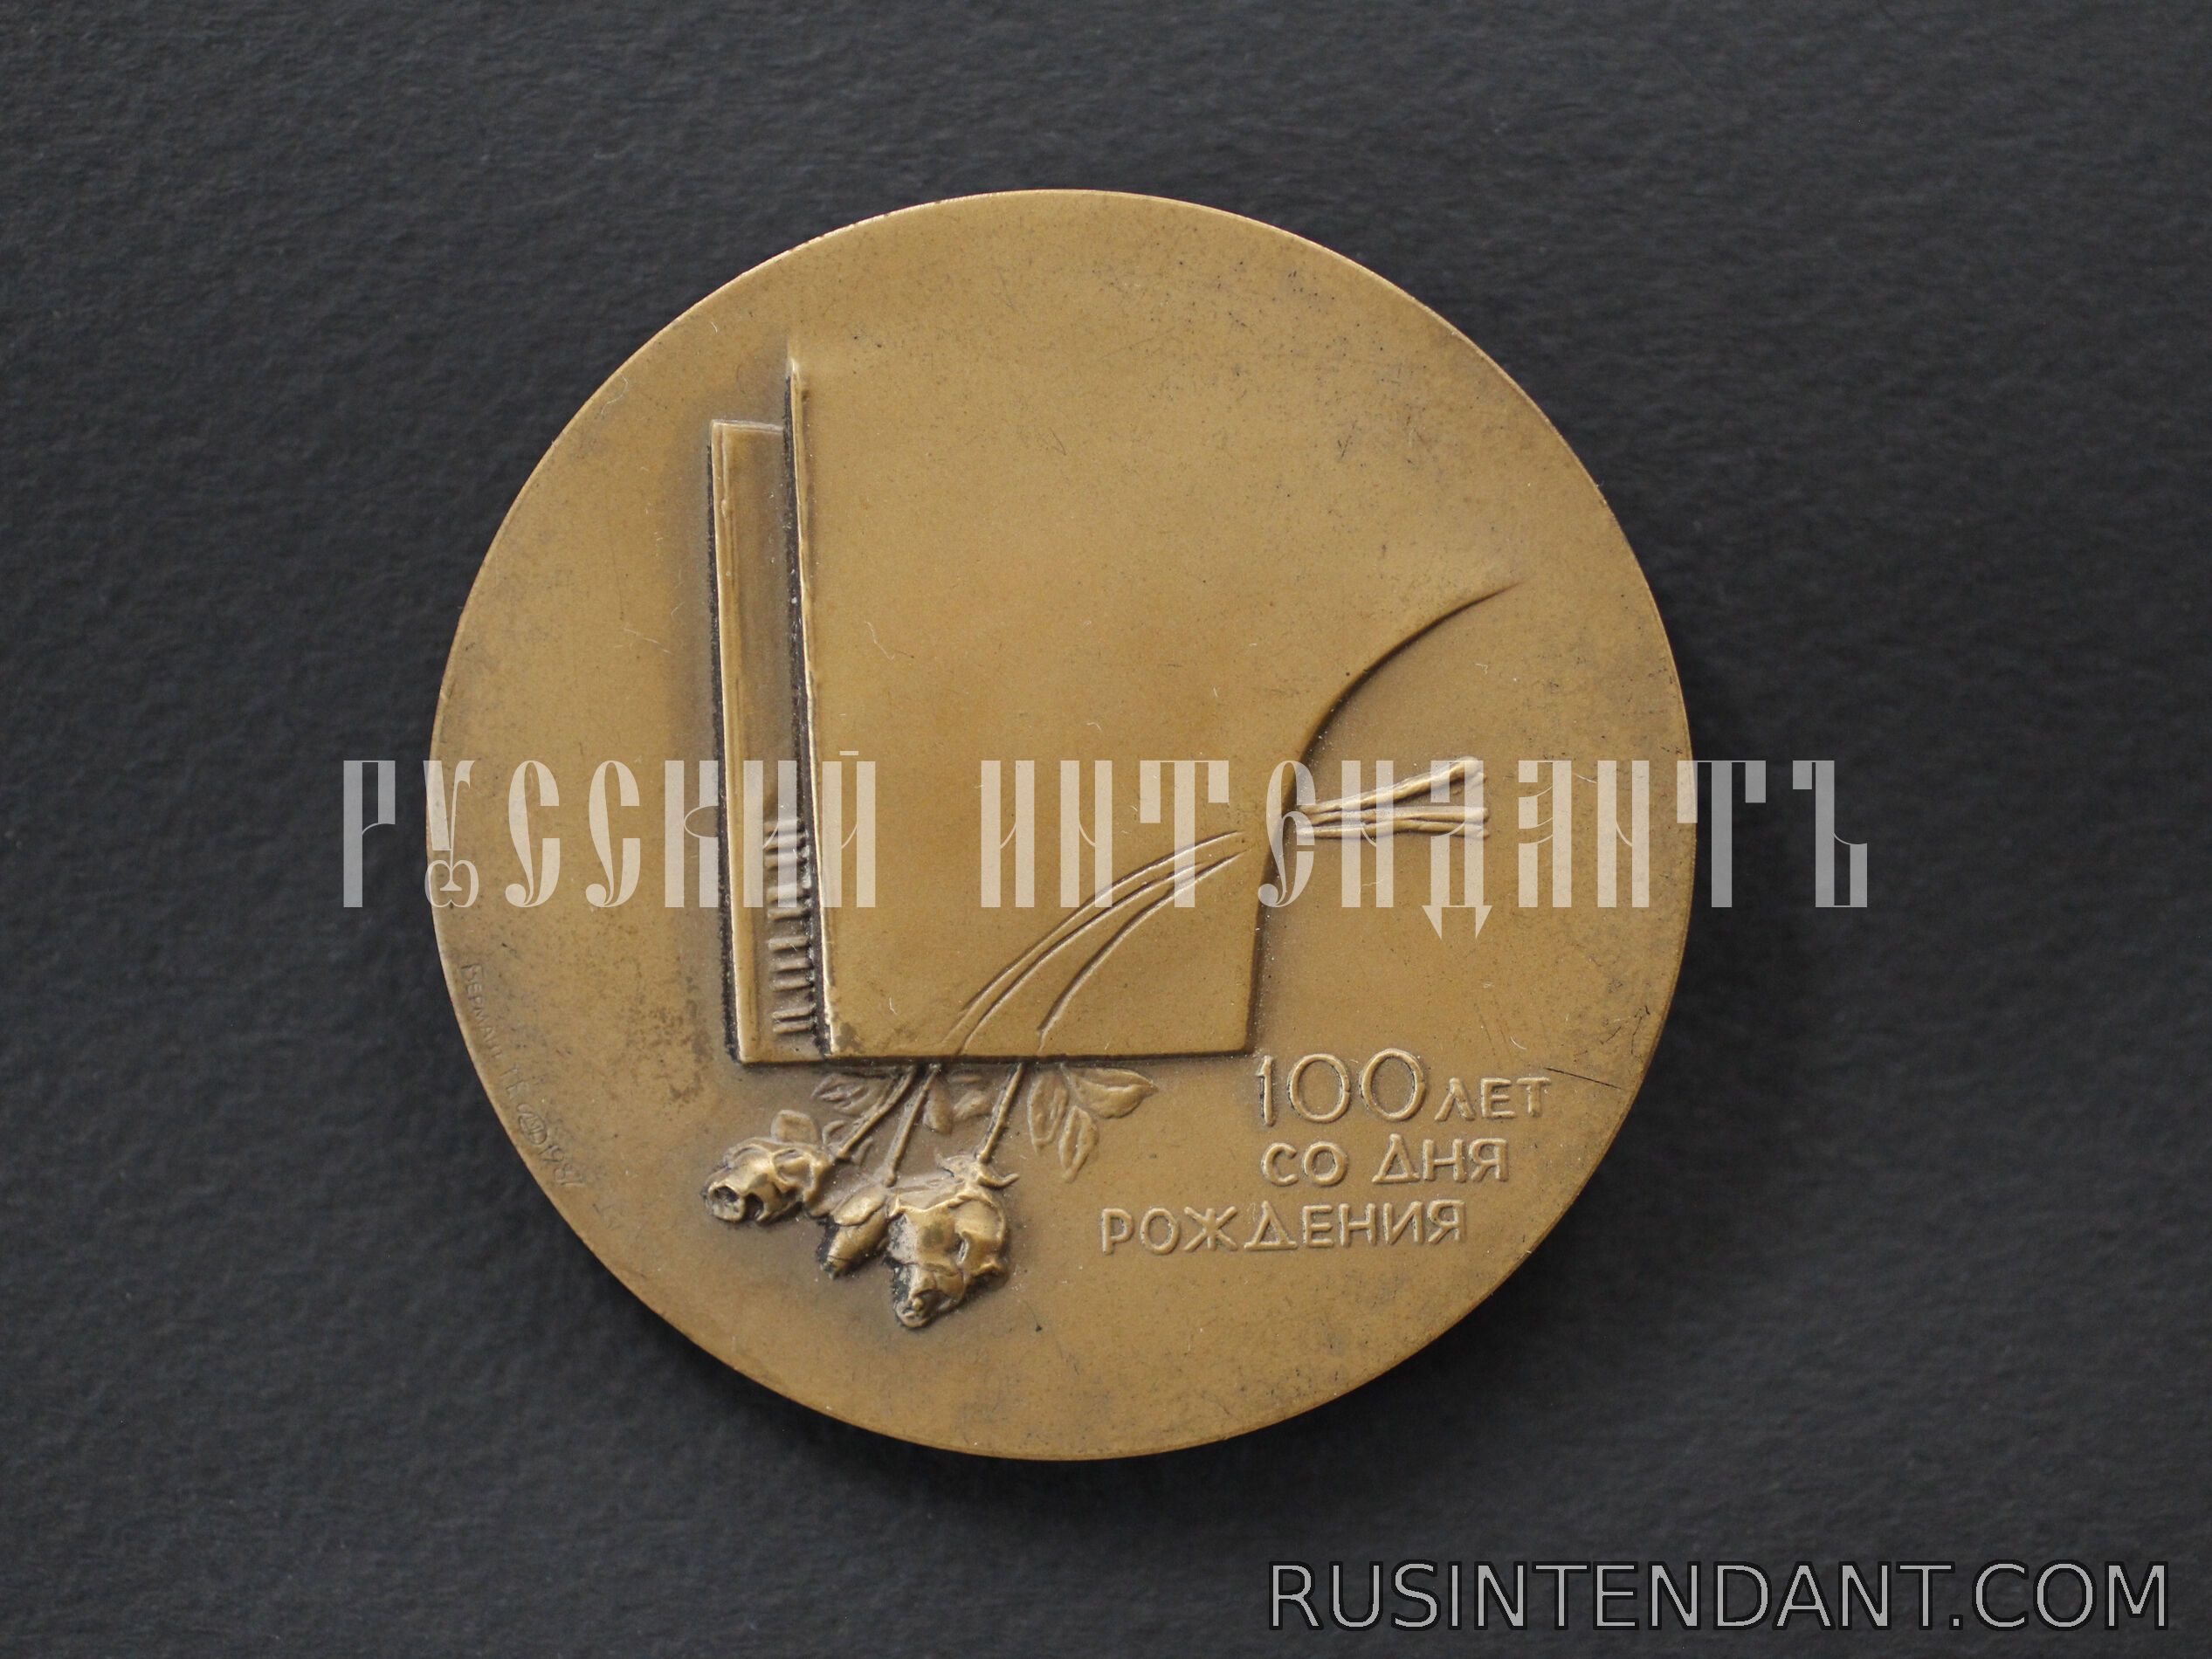 Фото 2: Настольная медаль «100 лет со дня рождения Н.А.Обуховой» 